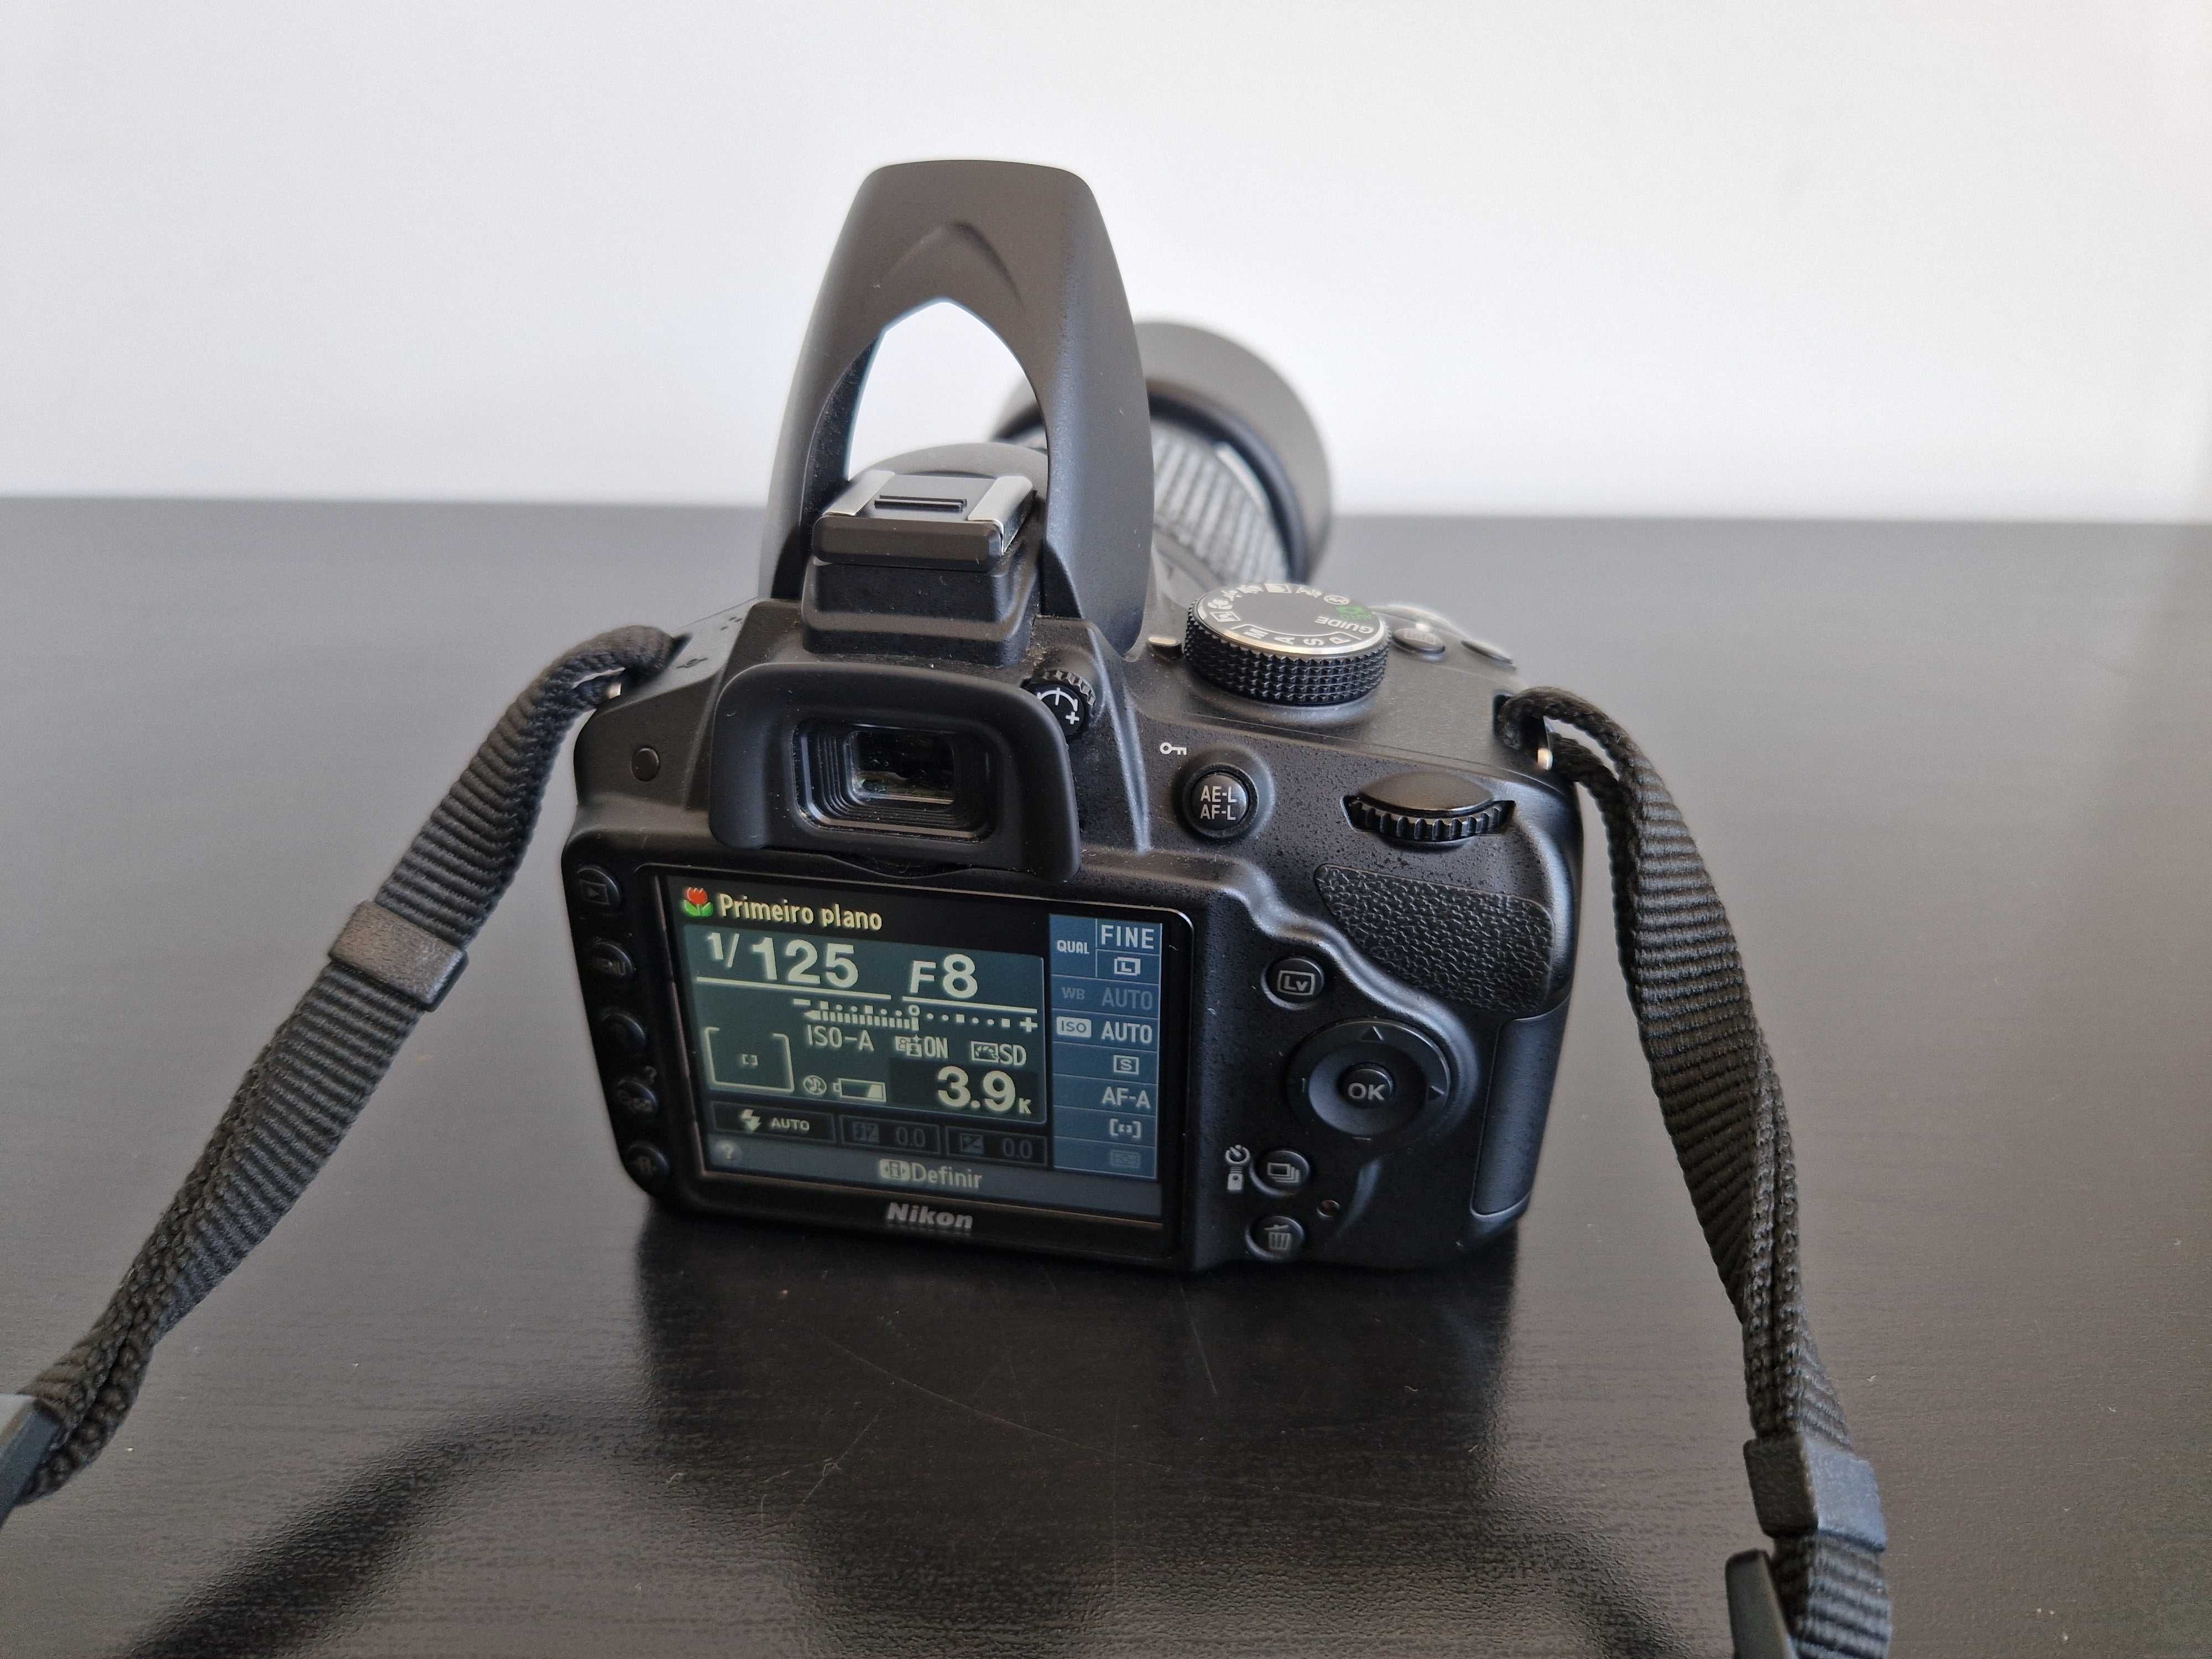 Nikon D3200 (2 malas/2 lentes/cartão 64gb/tripé/kit limpeza/manual)